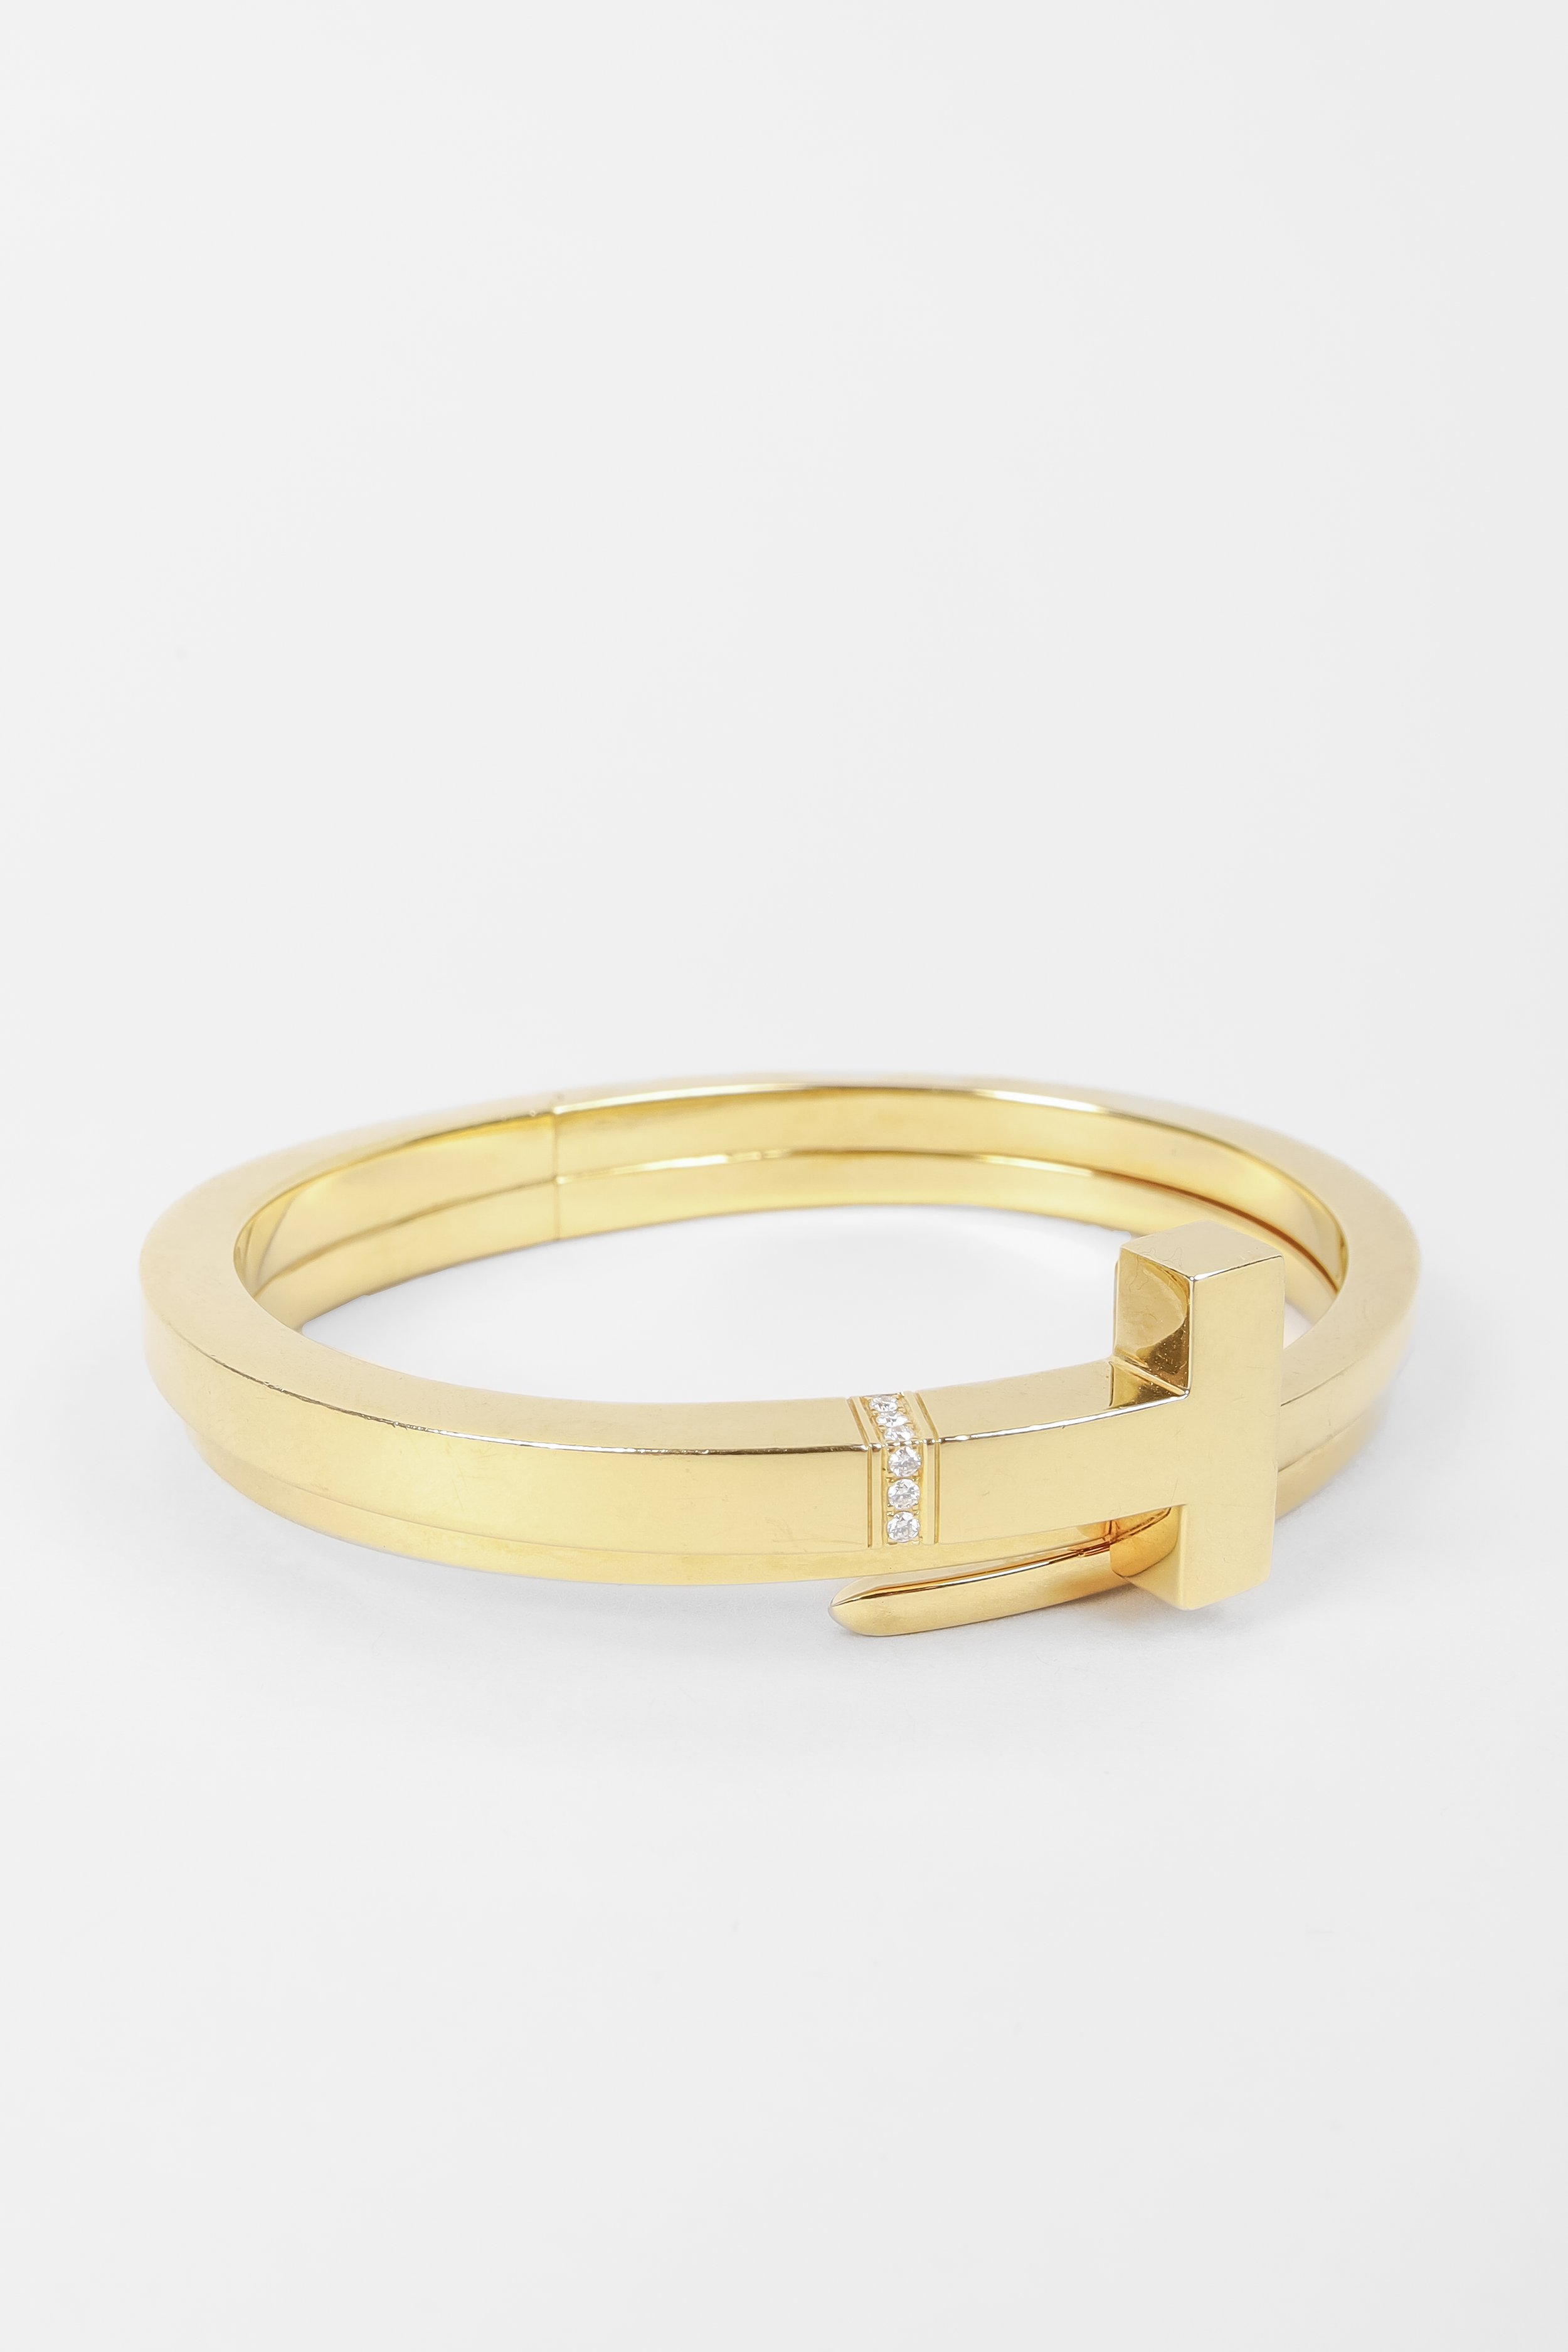 Tiffany HardWear 18K Gold Link Bracelet  Tiffany  Co